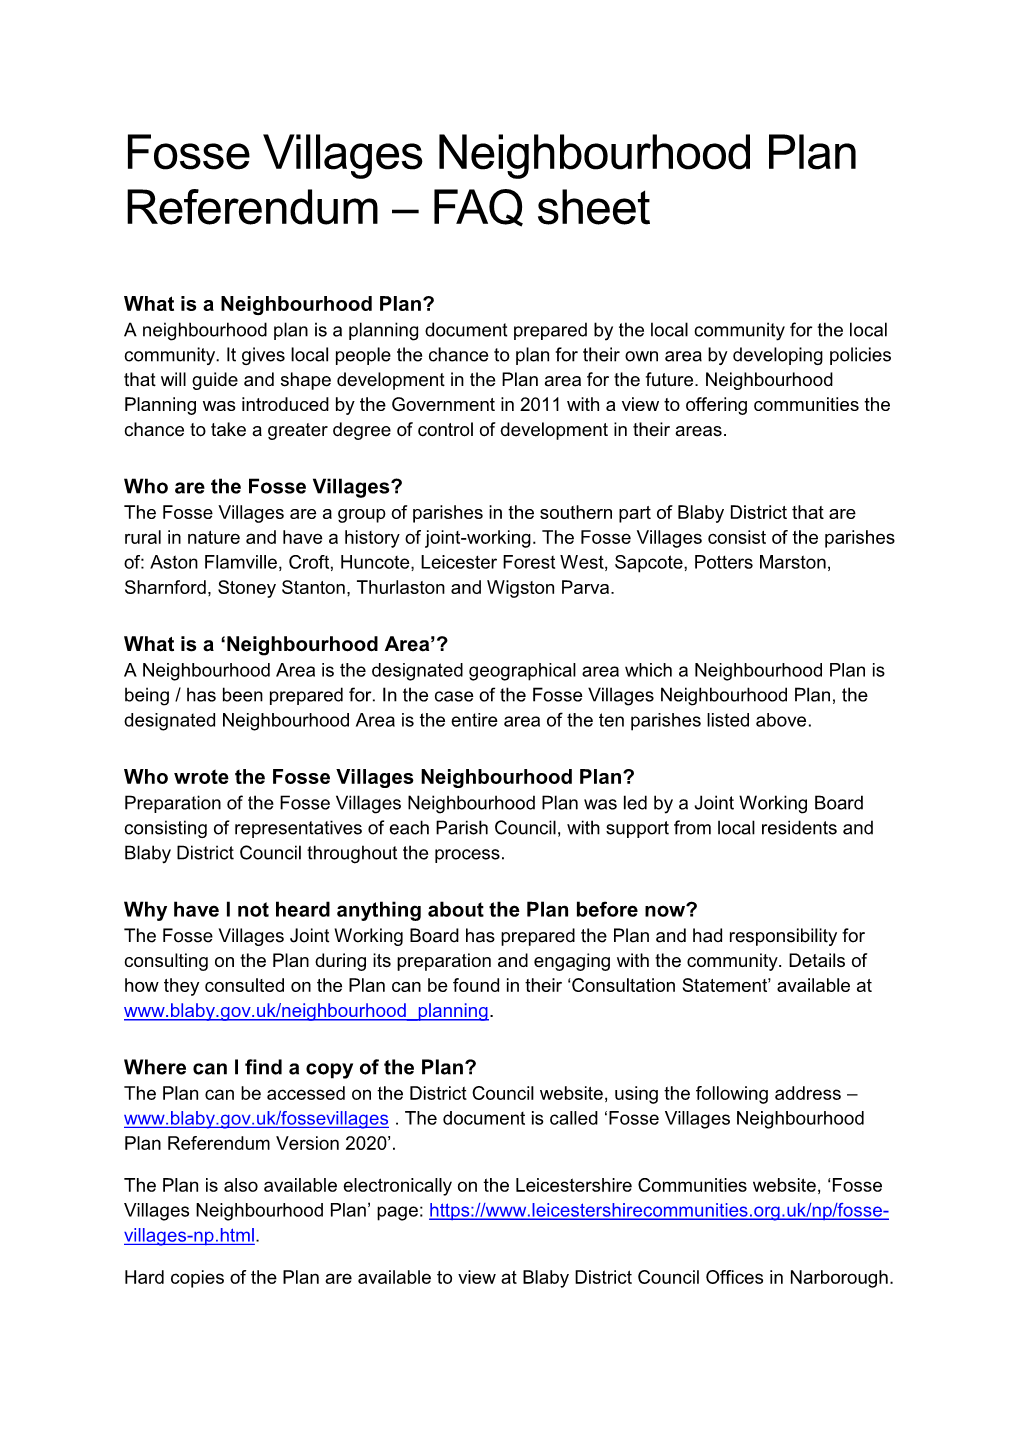 Fosse Villages Neighbourhood Plan Referendum FAQ Sheet